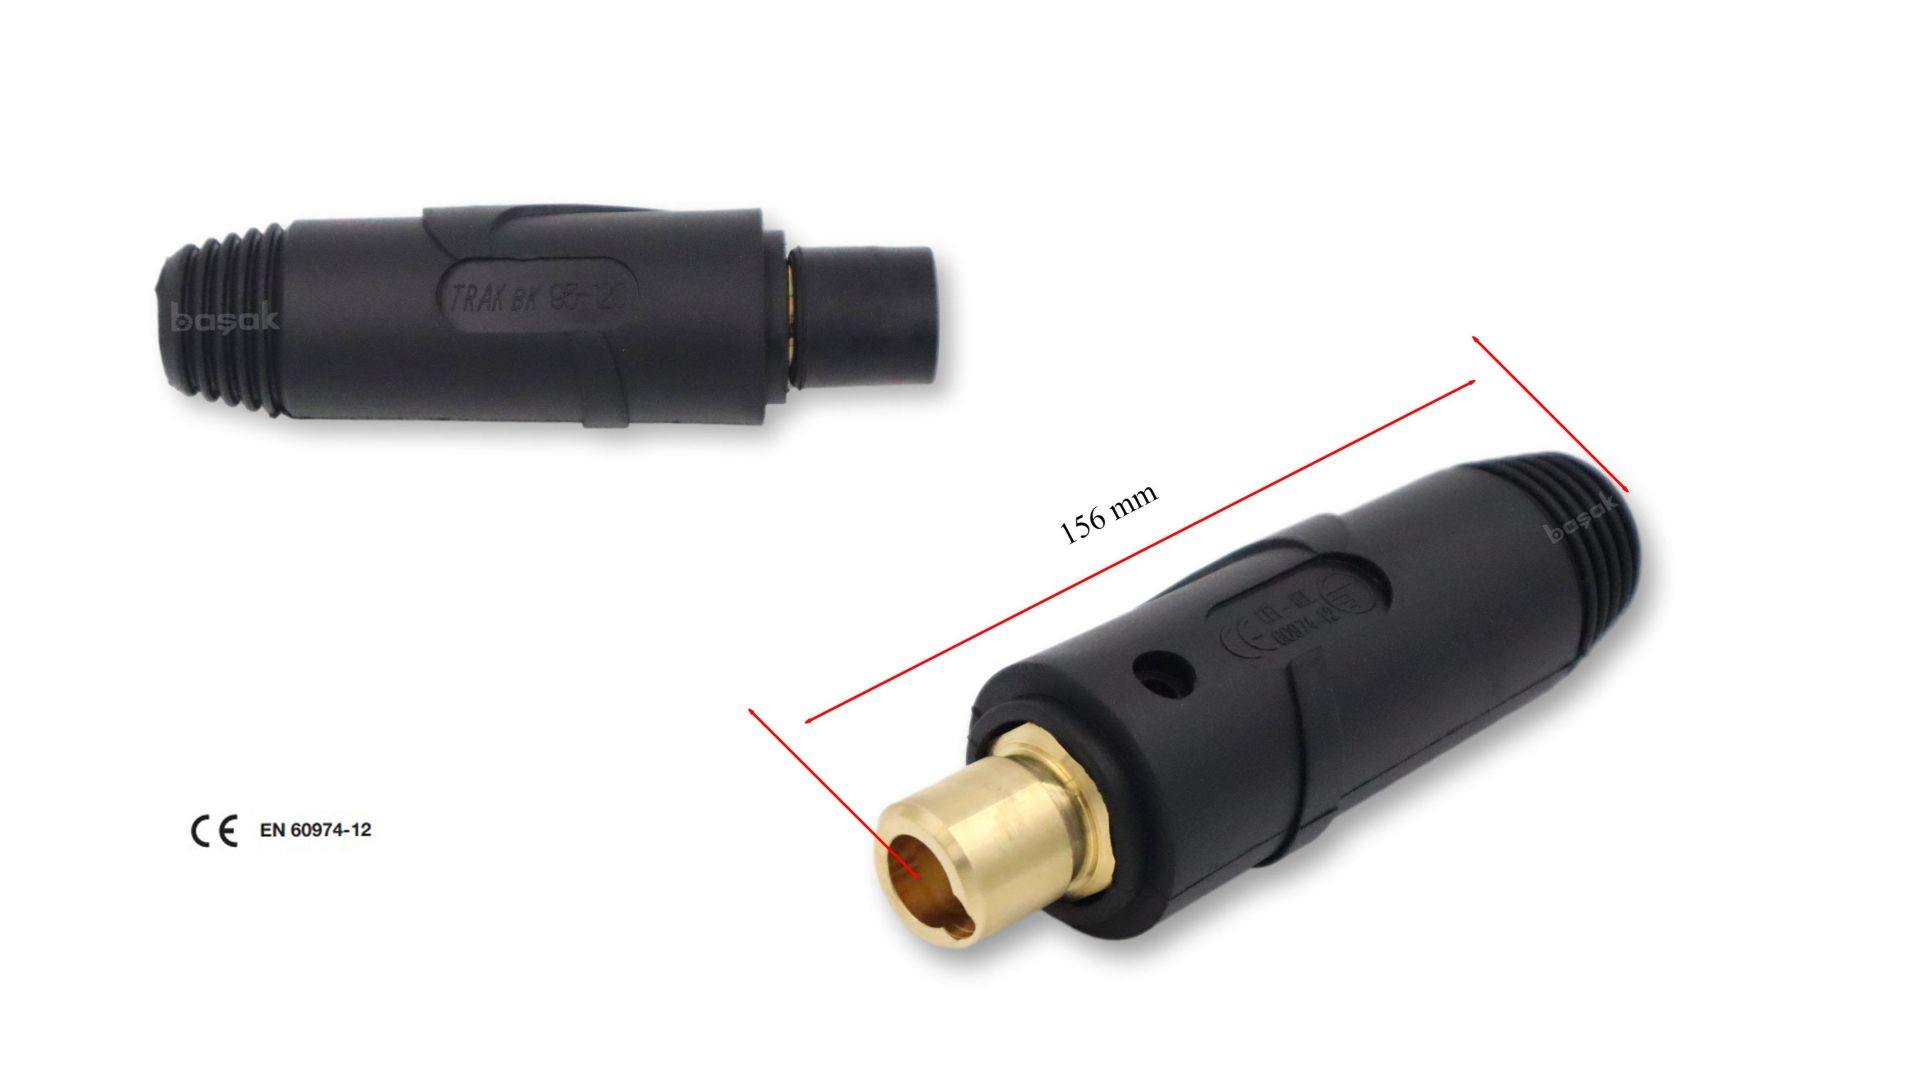 CX0046 95-120 mm² Ultra Kaynak Kablo Bağlantı Fişi Dişi Trafimet